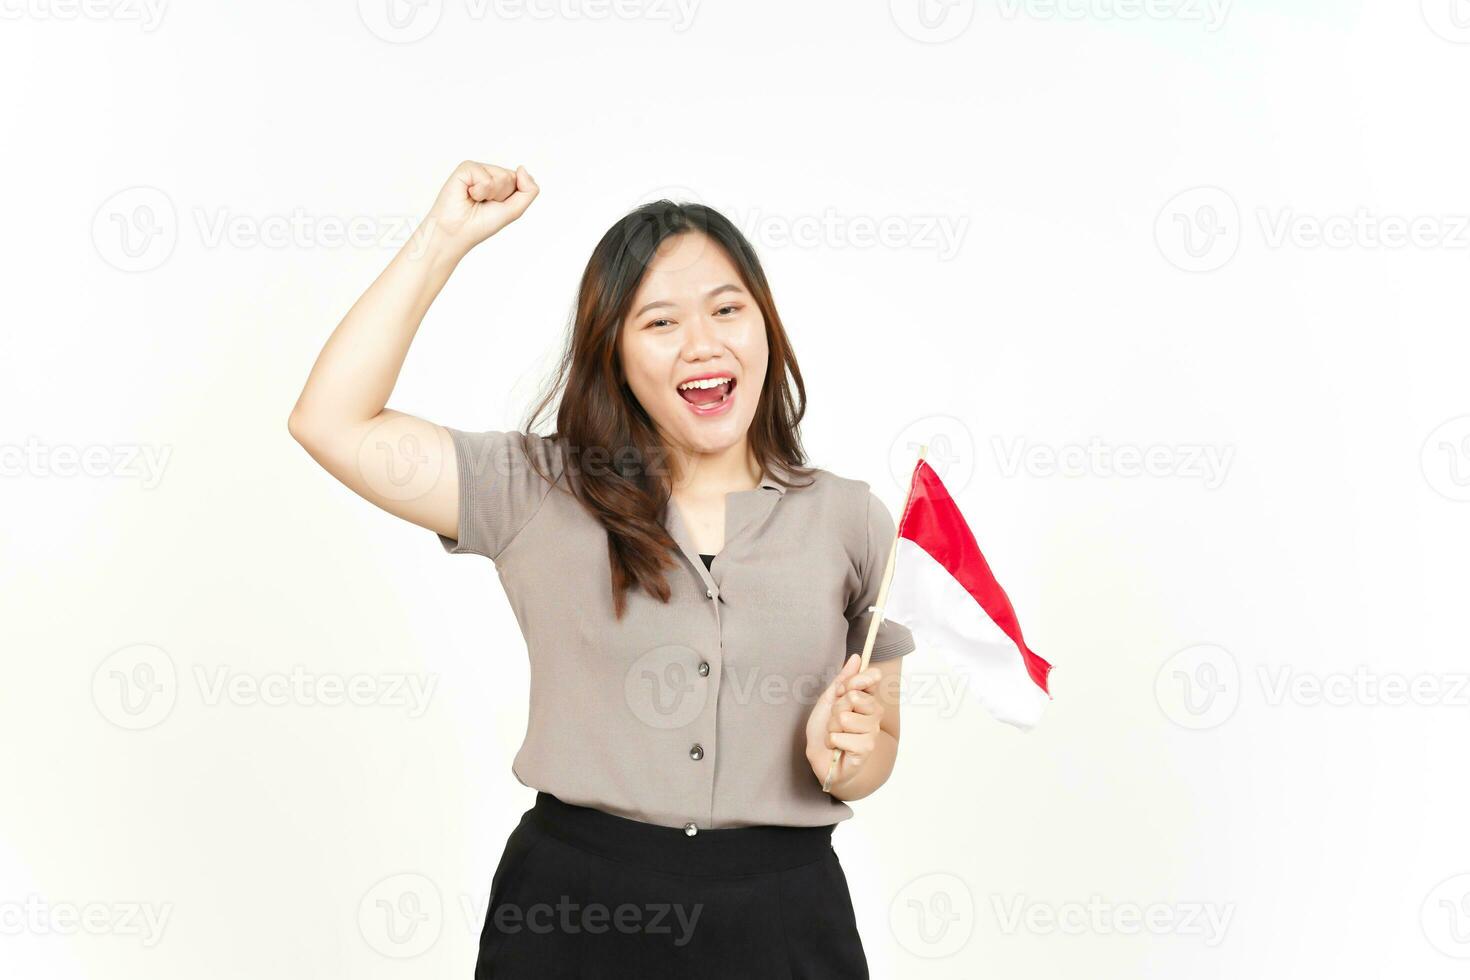 segurando Indonésia bandeira feliz para Indonésia independência dia 17 agosto do lindo ásia mulher foto